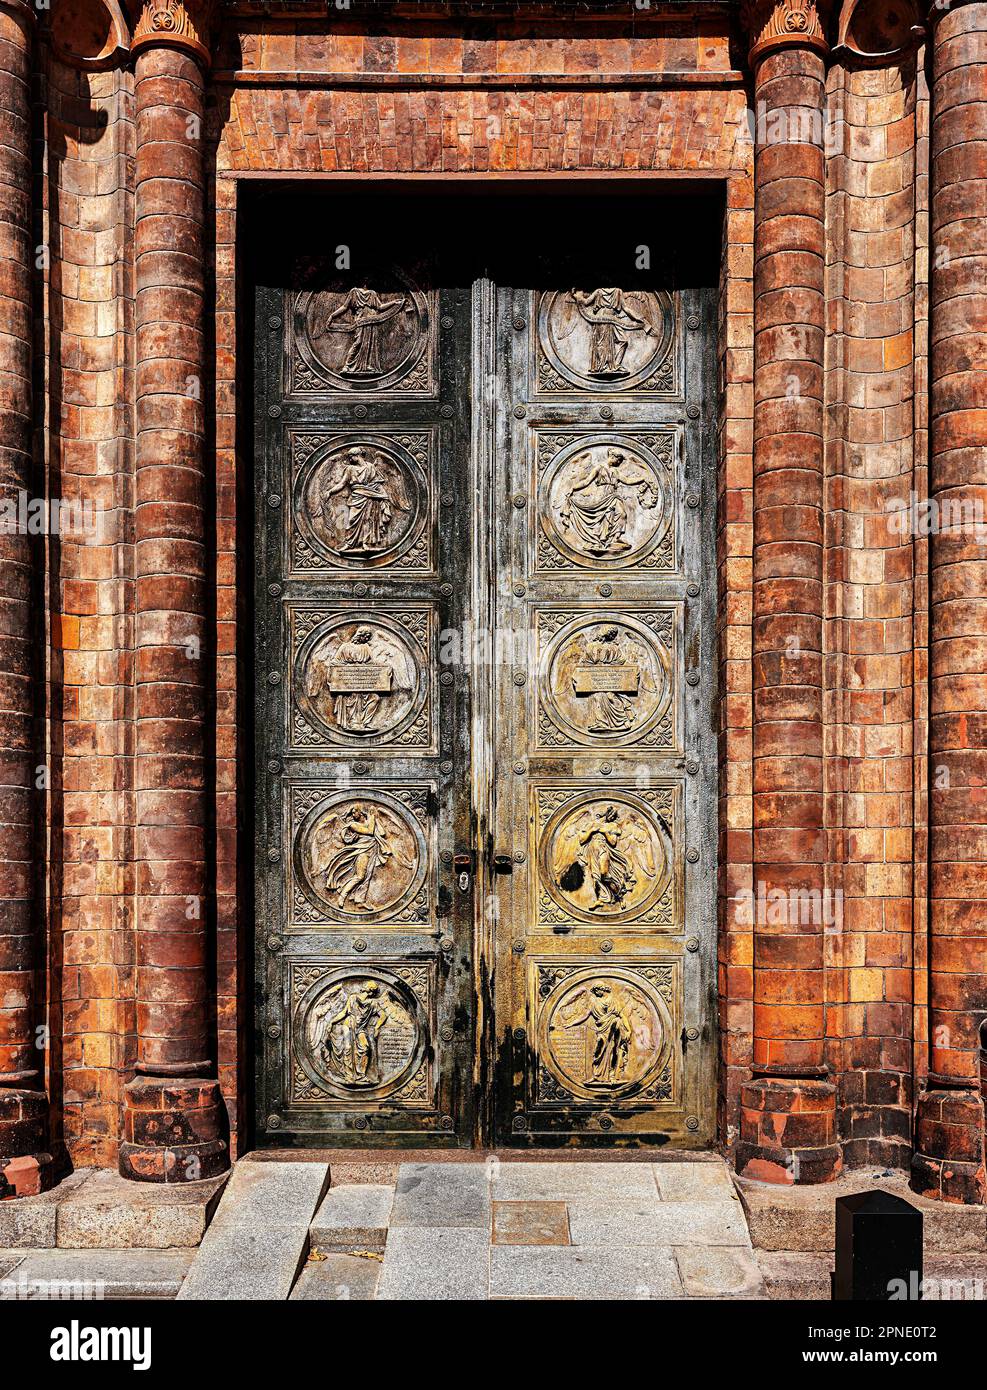 Portale con medaglioni in bassorilievo, Chiesa di Friedrichwerdersche, Werderscher Markt, Berlino, Germania Foto Stock